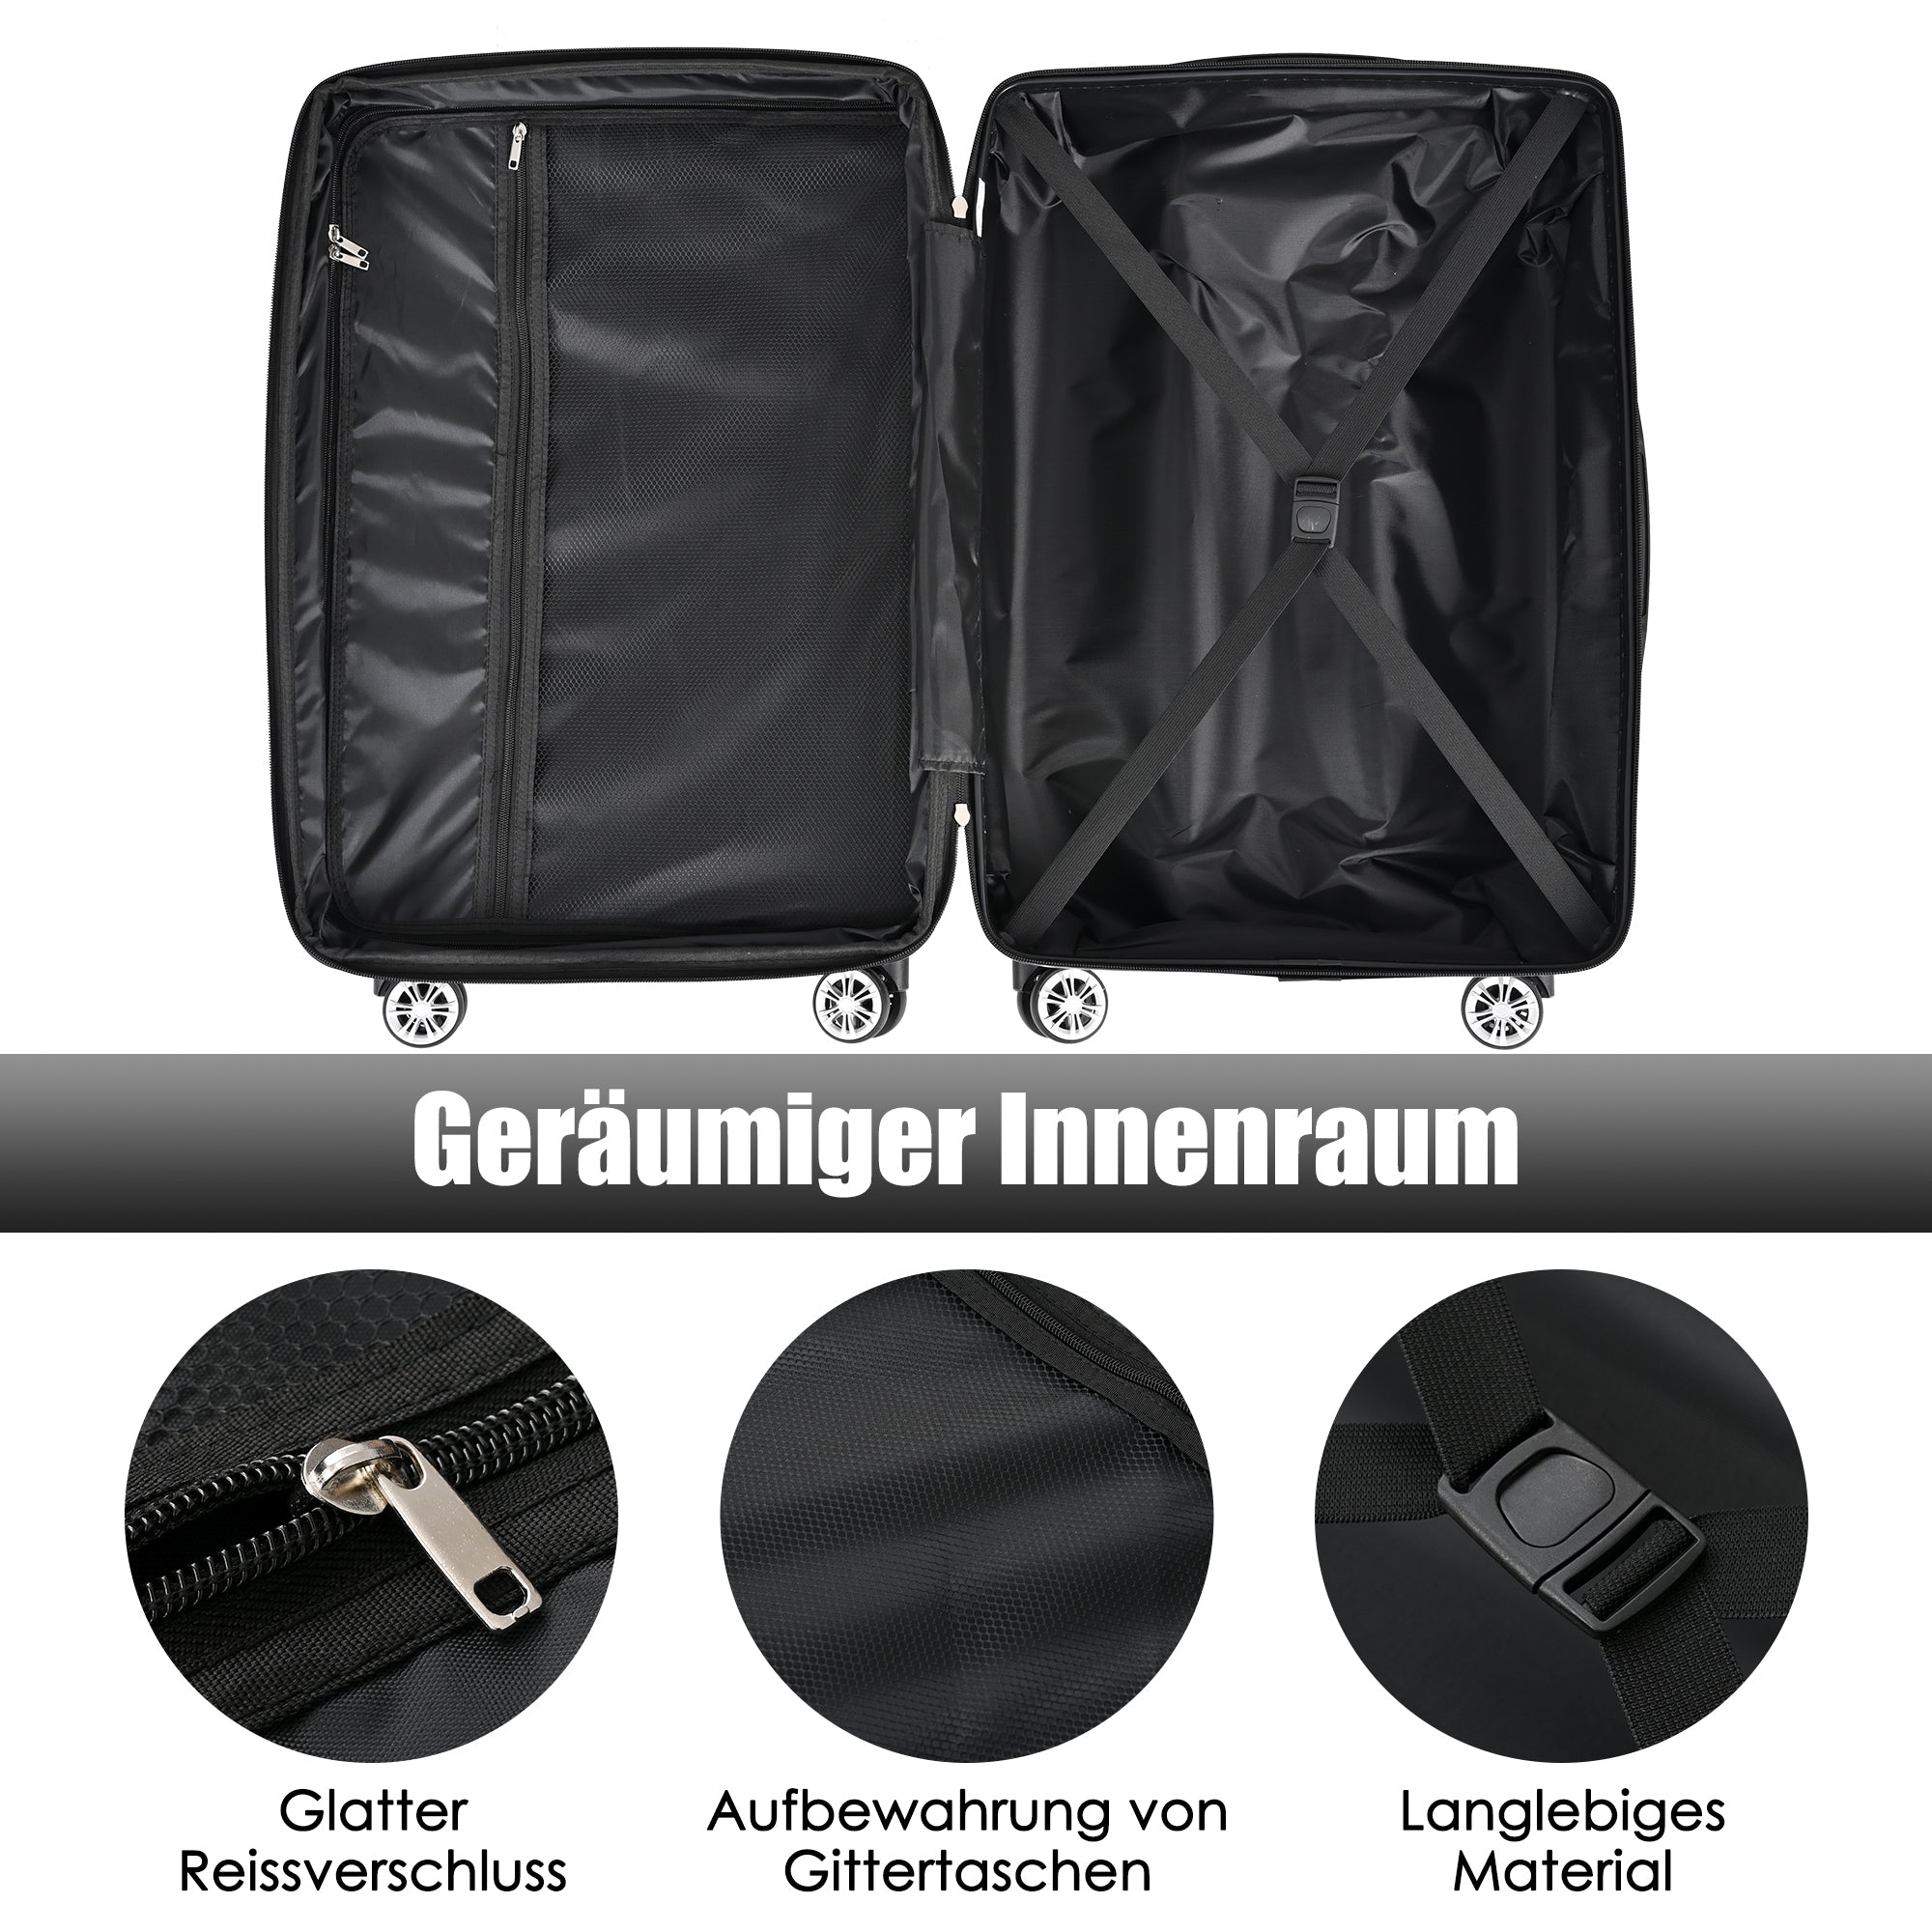 Kofferset, Koffer Hartschale-Koffer , Rollkoffer, Reisekoffer, Handgepäck 4 Rollen, ABS-Material, TSA Zollschloss, M-L-XL-Set Schwarz